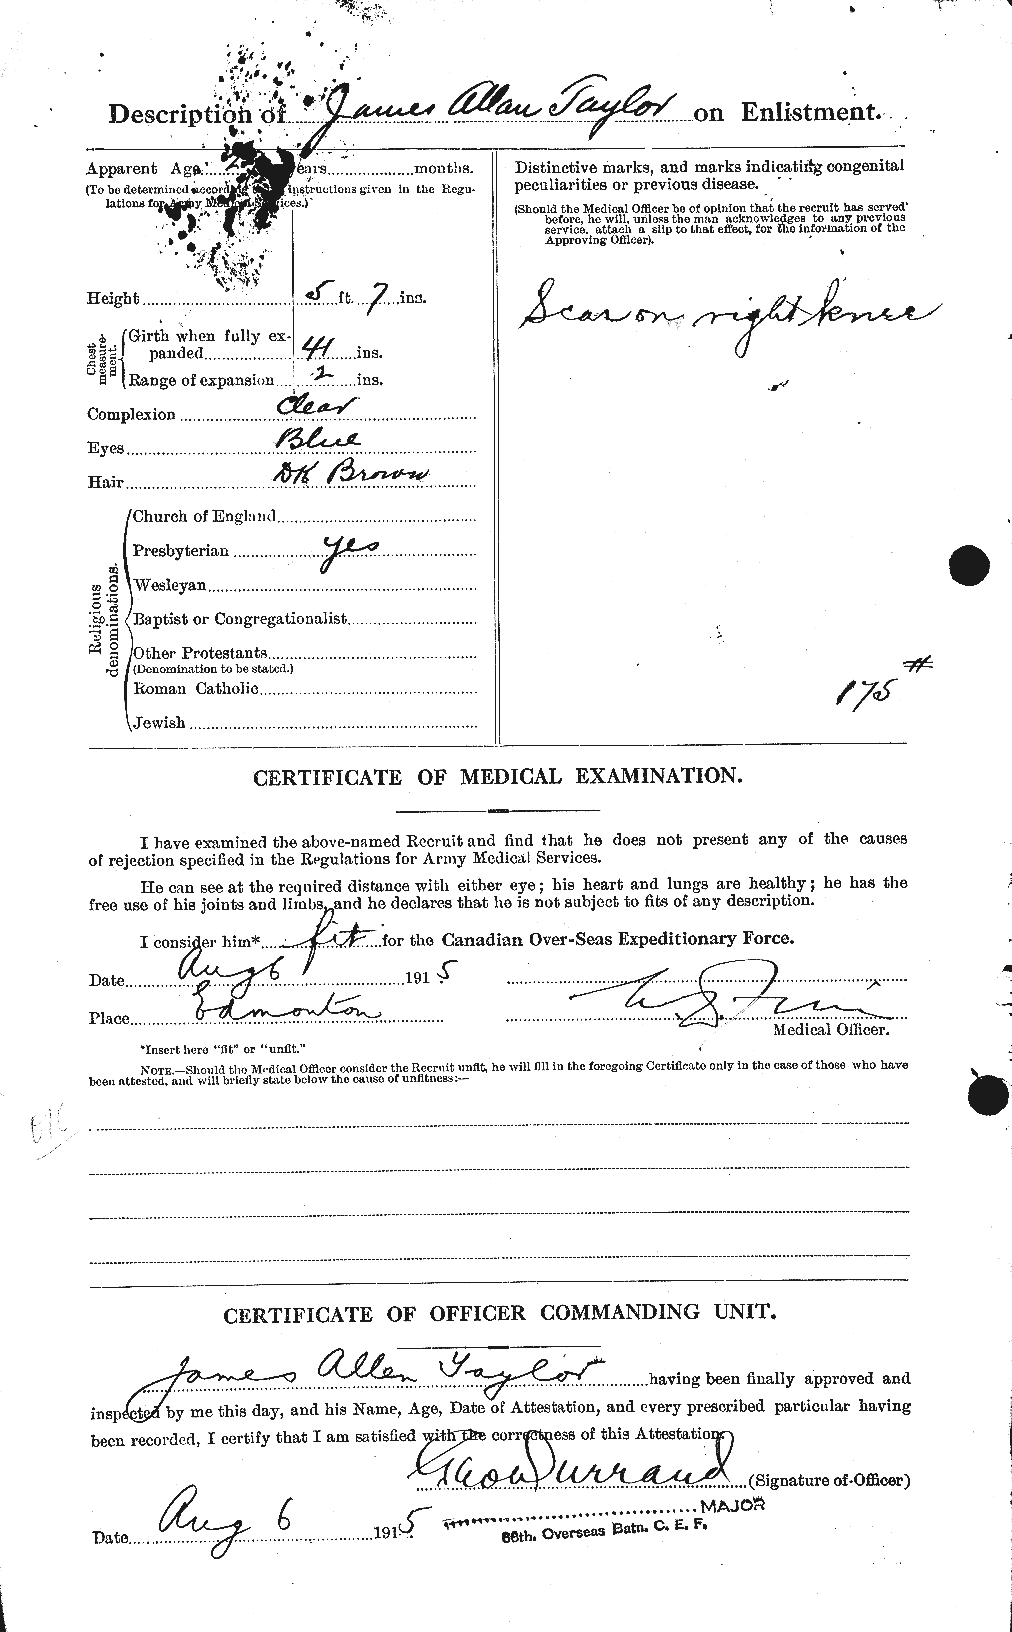 Dossiers du Personnel de la Première Guerre mondiale - CEC 626903b